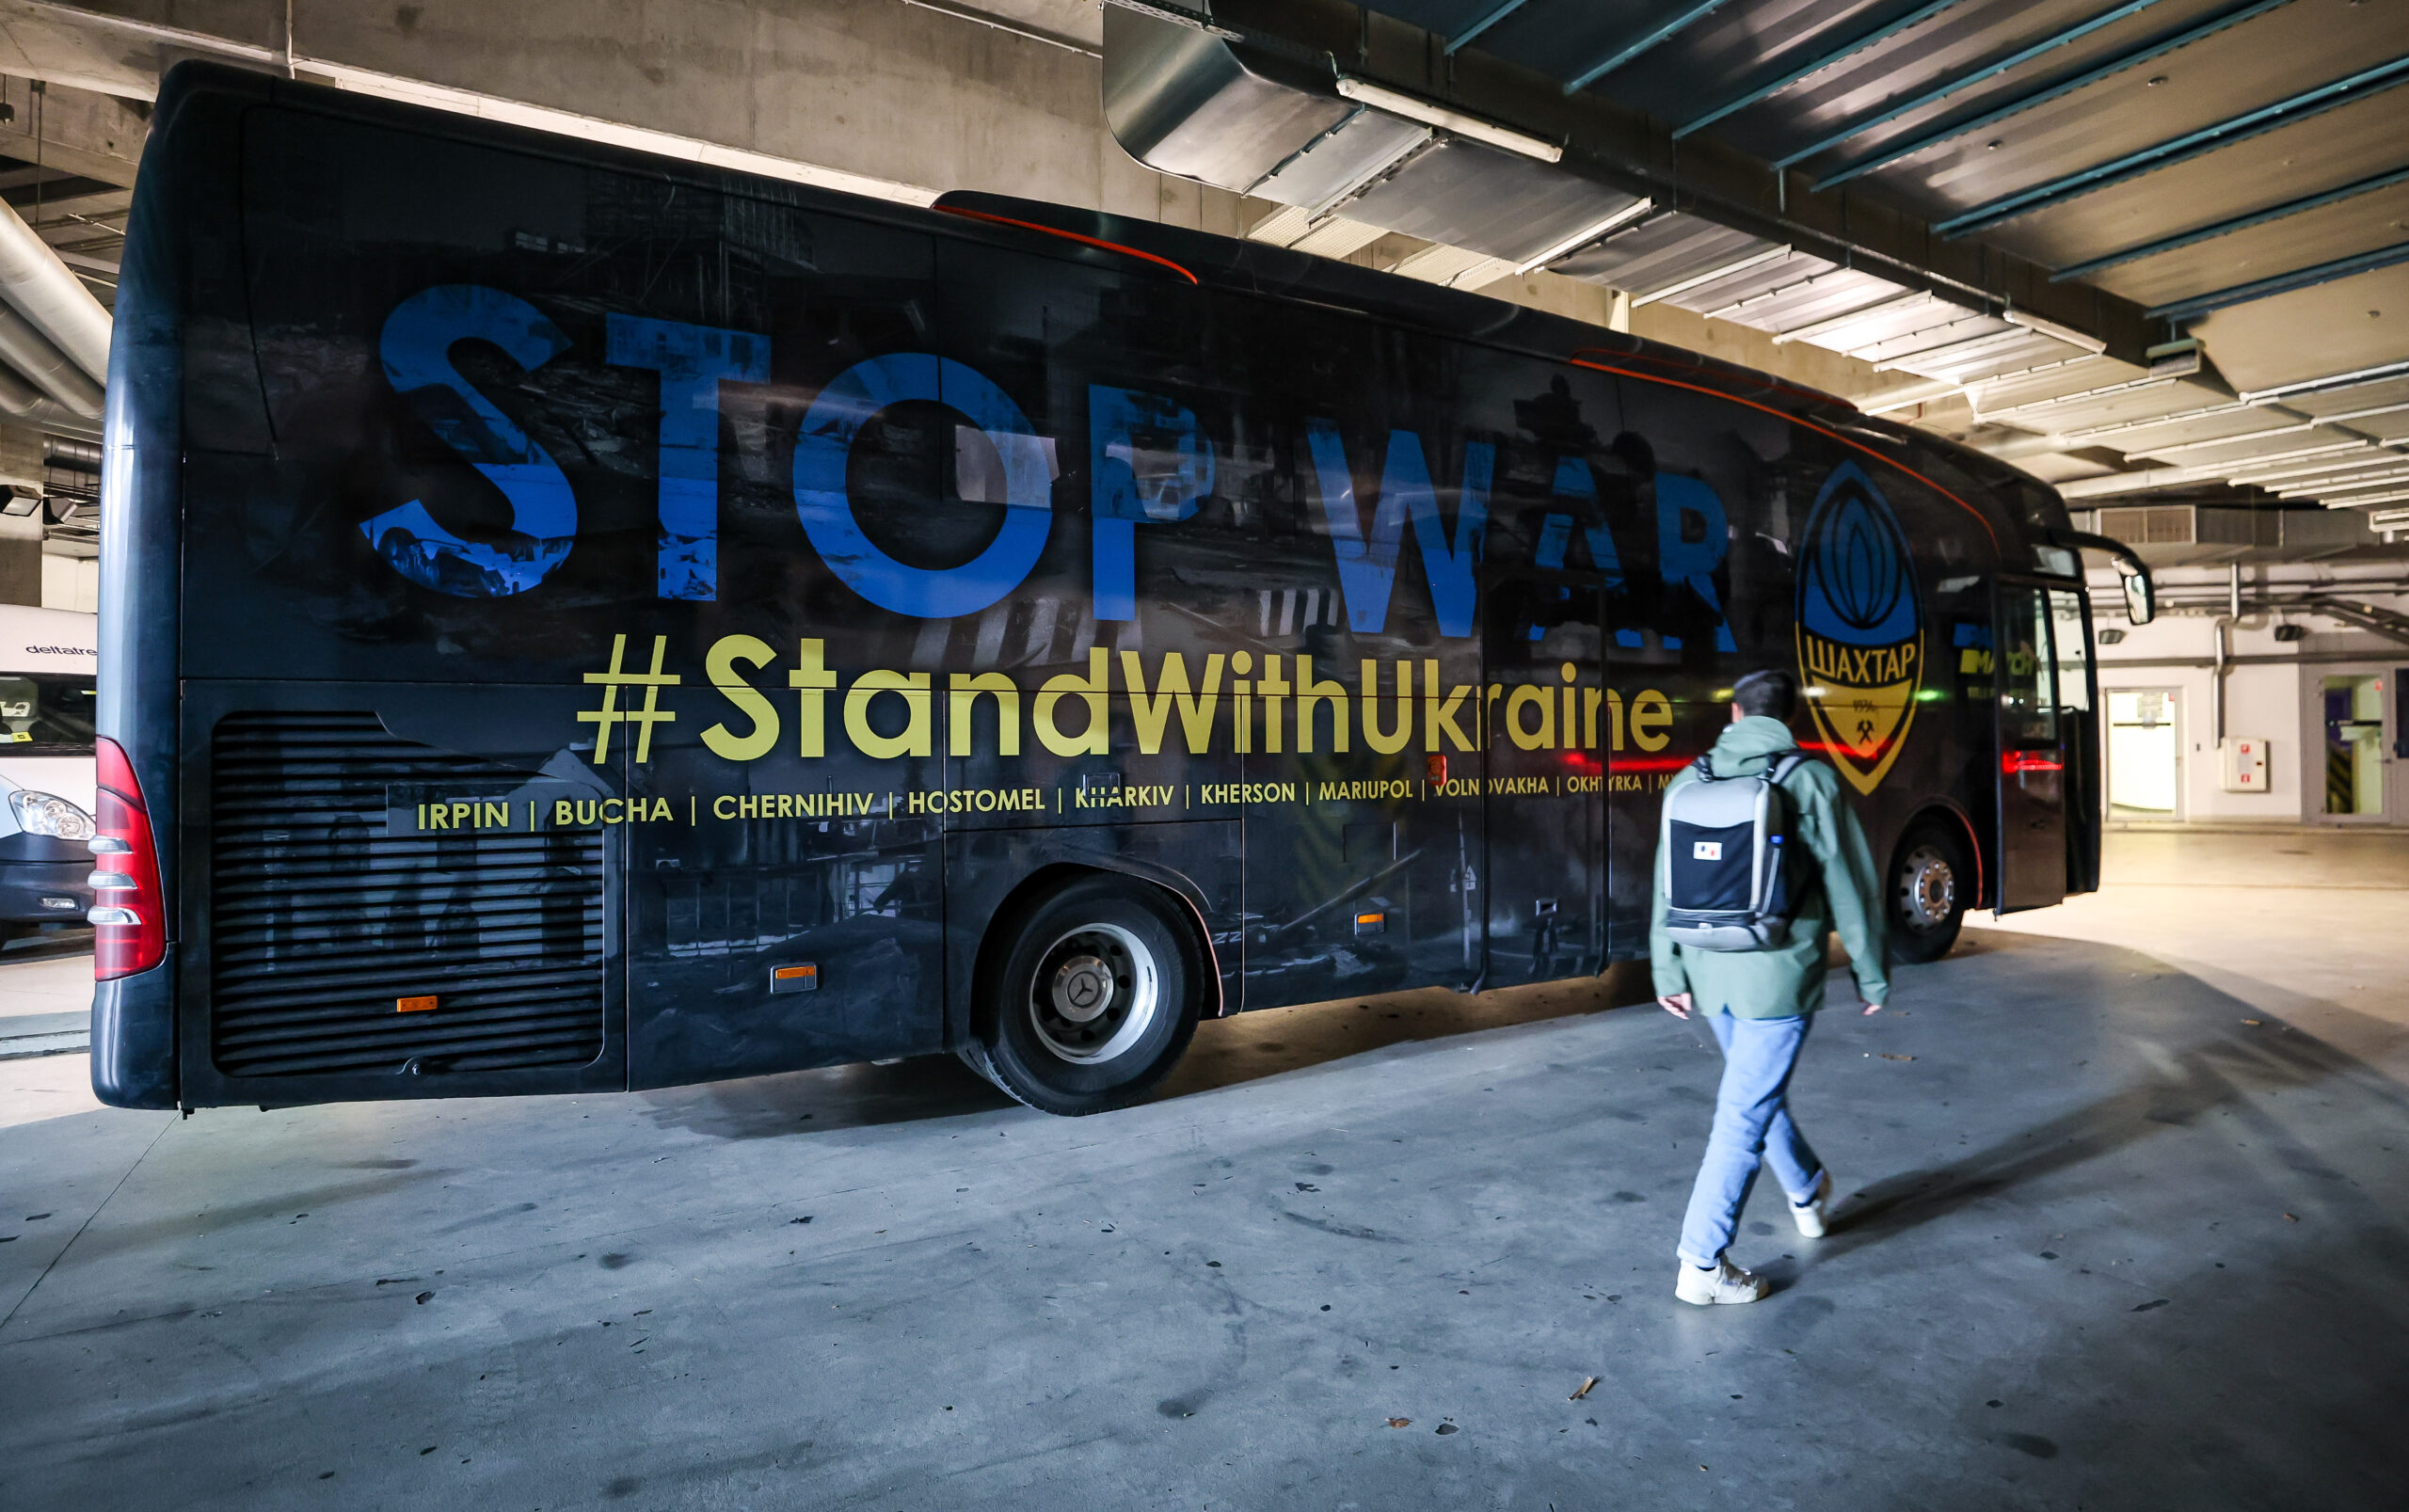 Shakhtar Donetsks Mannschaftsbus mit dem Aufdruck „Stop War“.